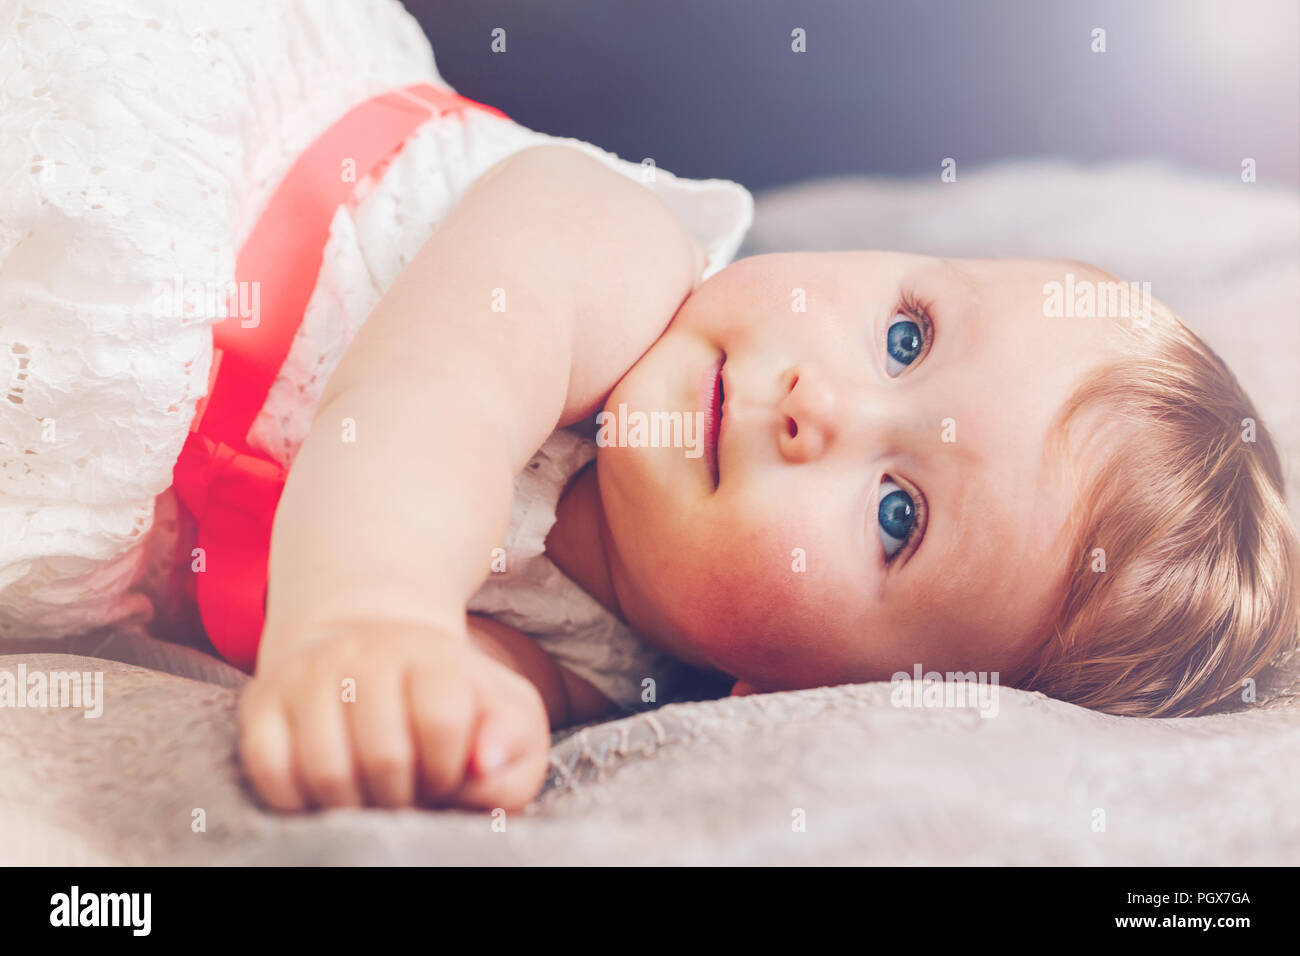 Retrato de cute adorable rubia caucásica bebé sonriente con ojos azules en vestido blanco con lazo rojo tumbado en la cama en busca de un hada Fotografía de -